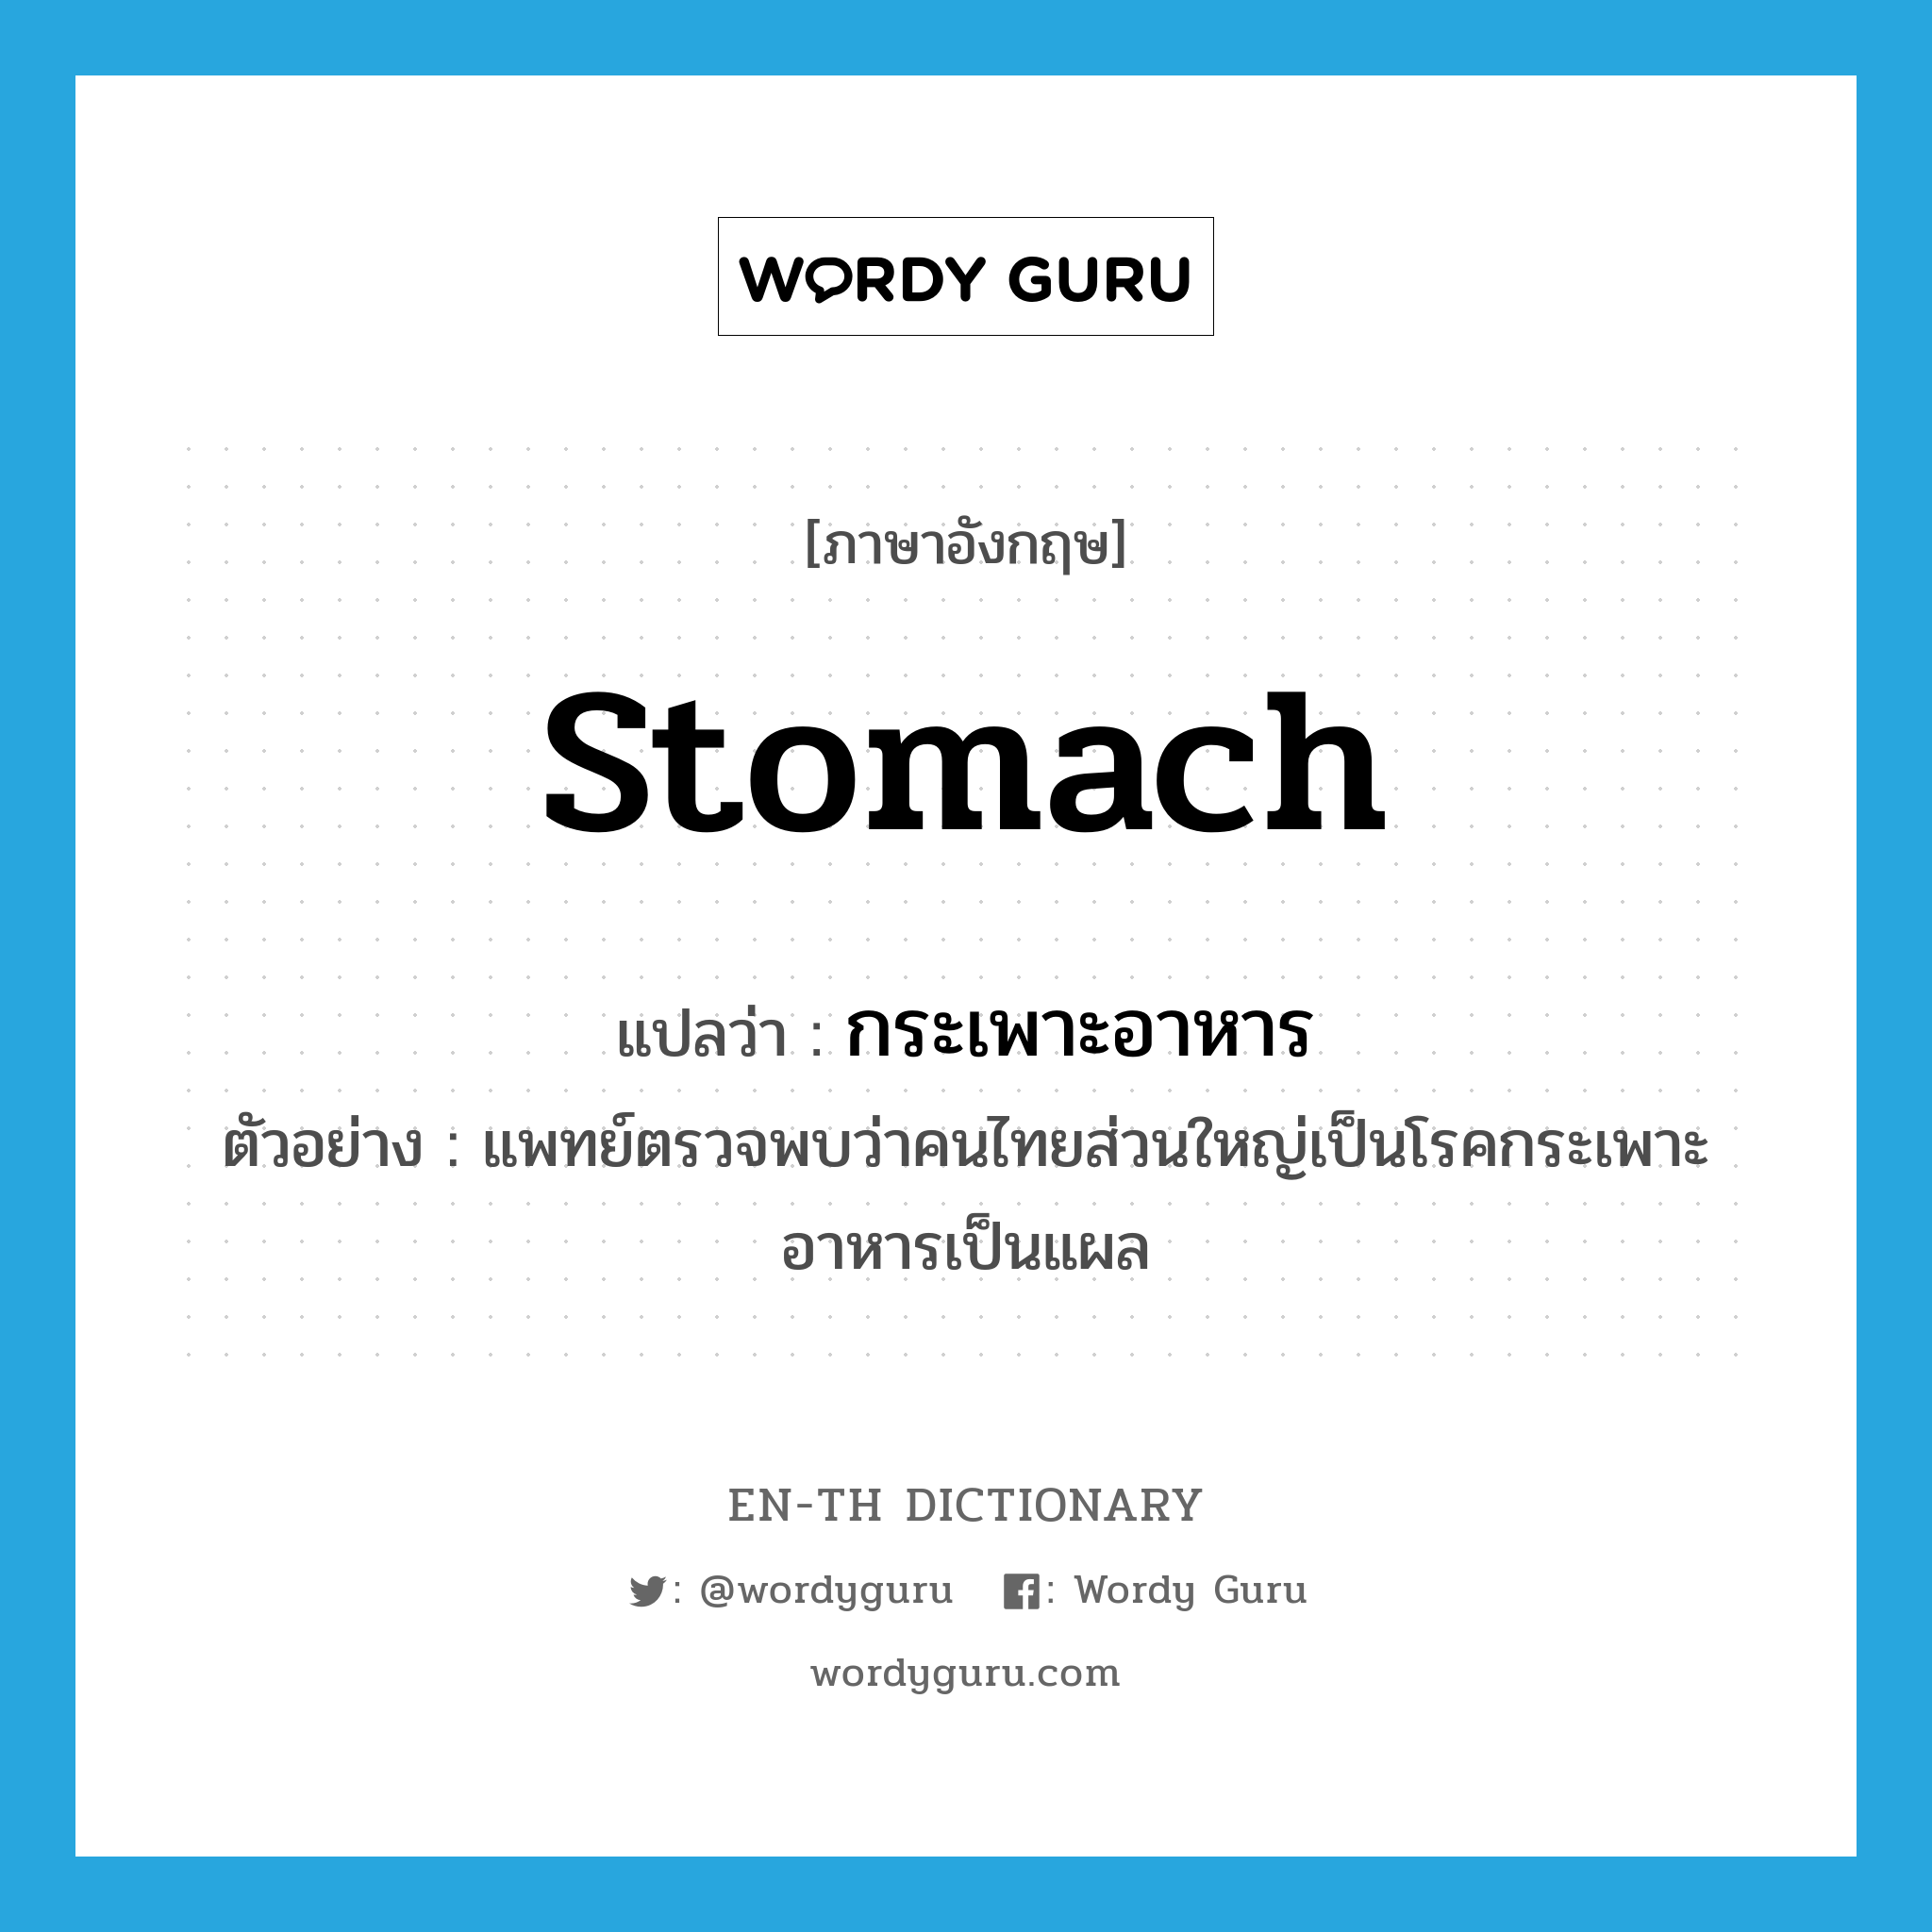 stomach แปลว่า?, คำศัพท์ภาษาอังกฤษ stomach แปลว่า กระเพาะอาหาร ประเภท N ตัวอย่าง แพทย์ตรวจพบว่าคนไทยส่วนใหญ่เป็นโรคกระเพาะอาหารเป็นแผล หมวด N